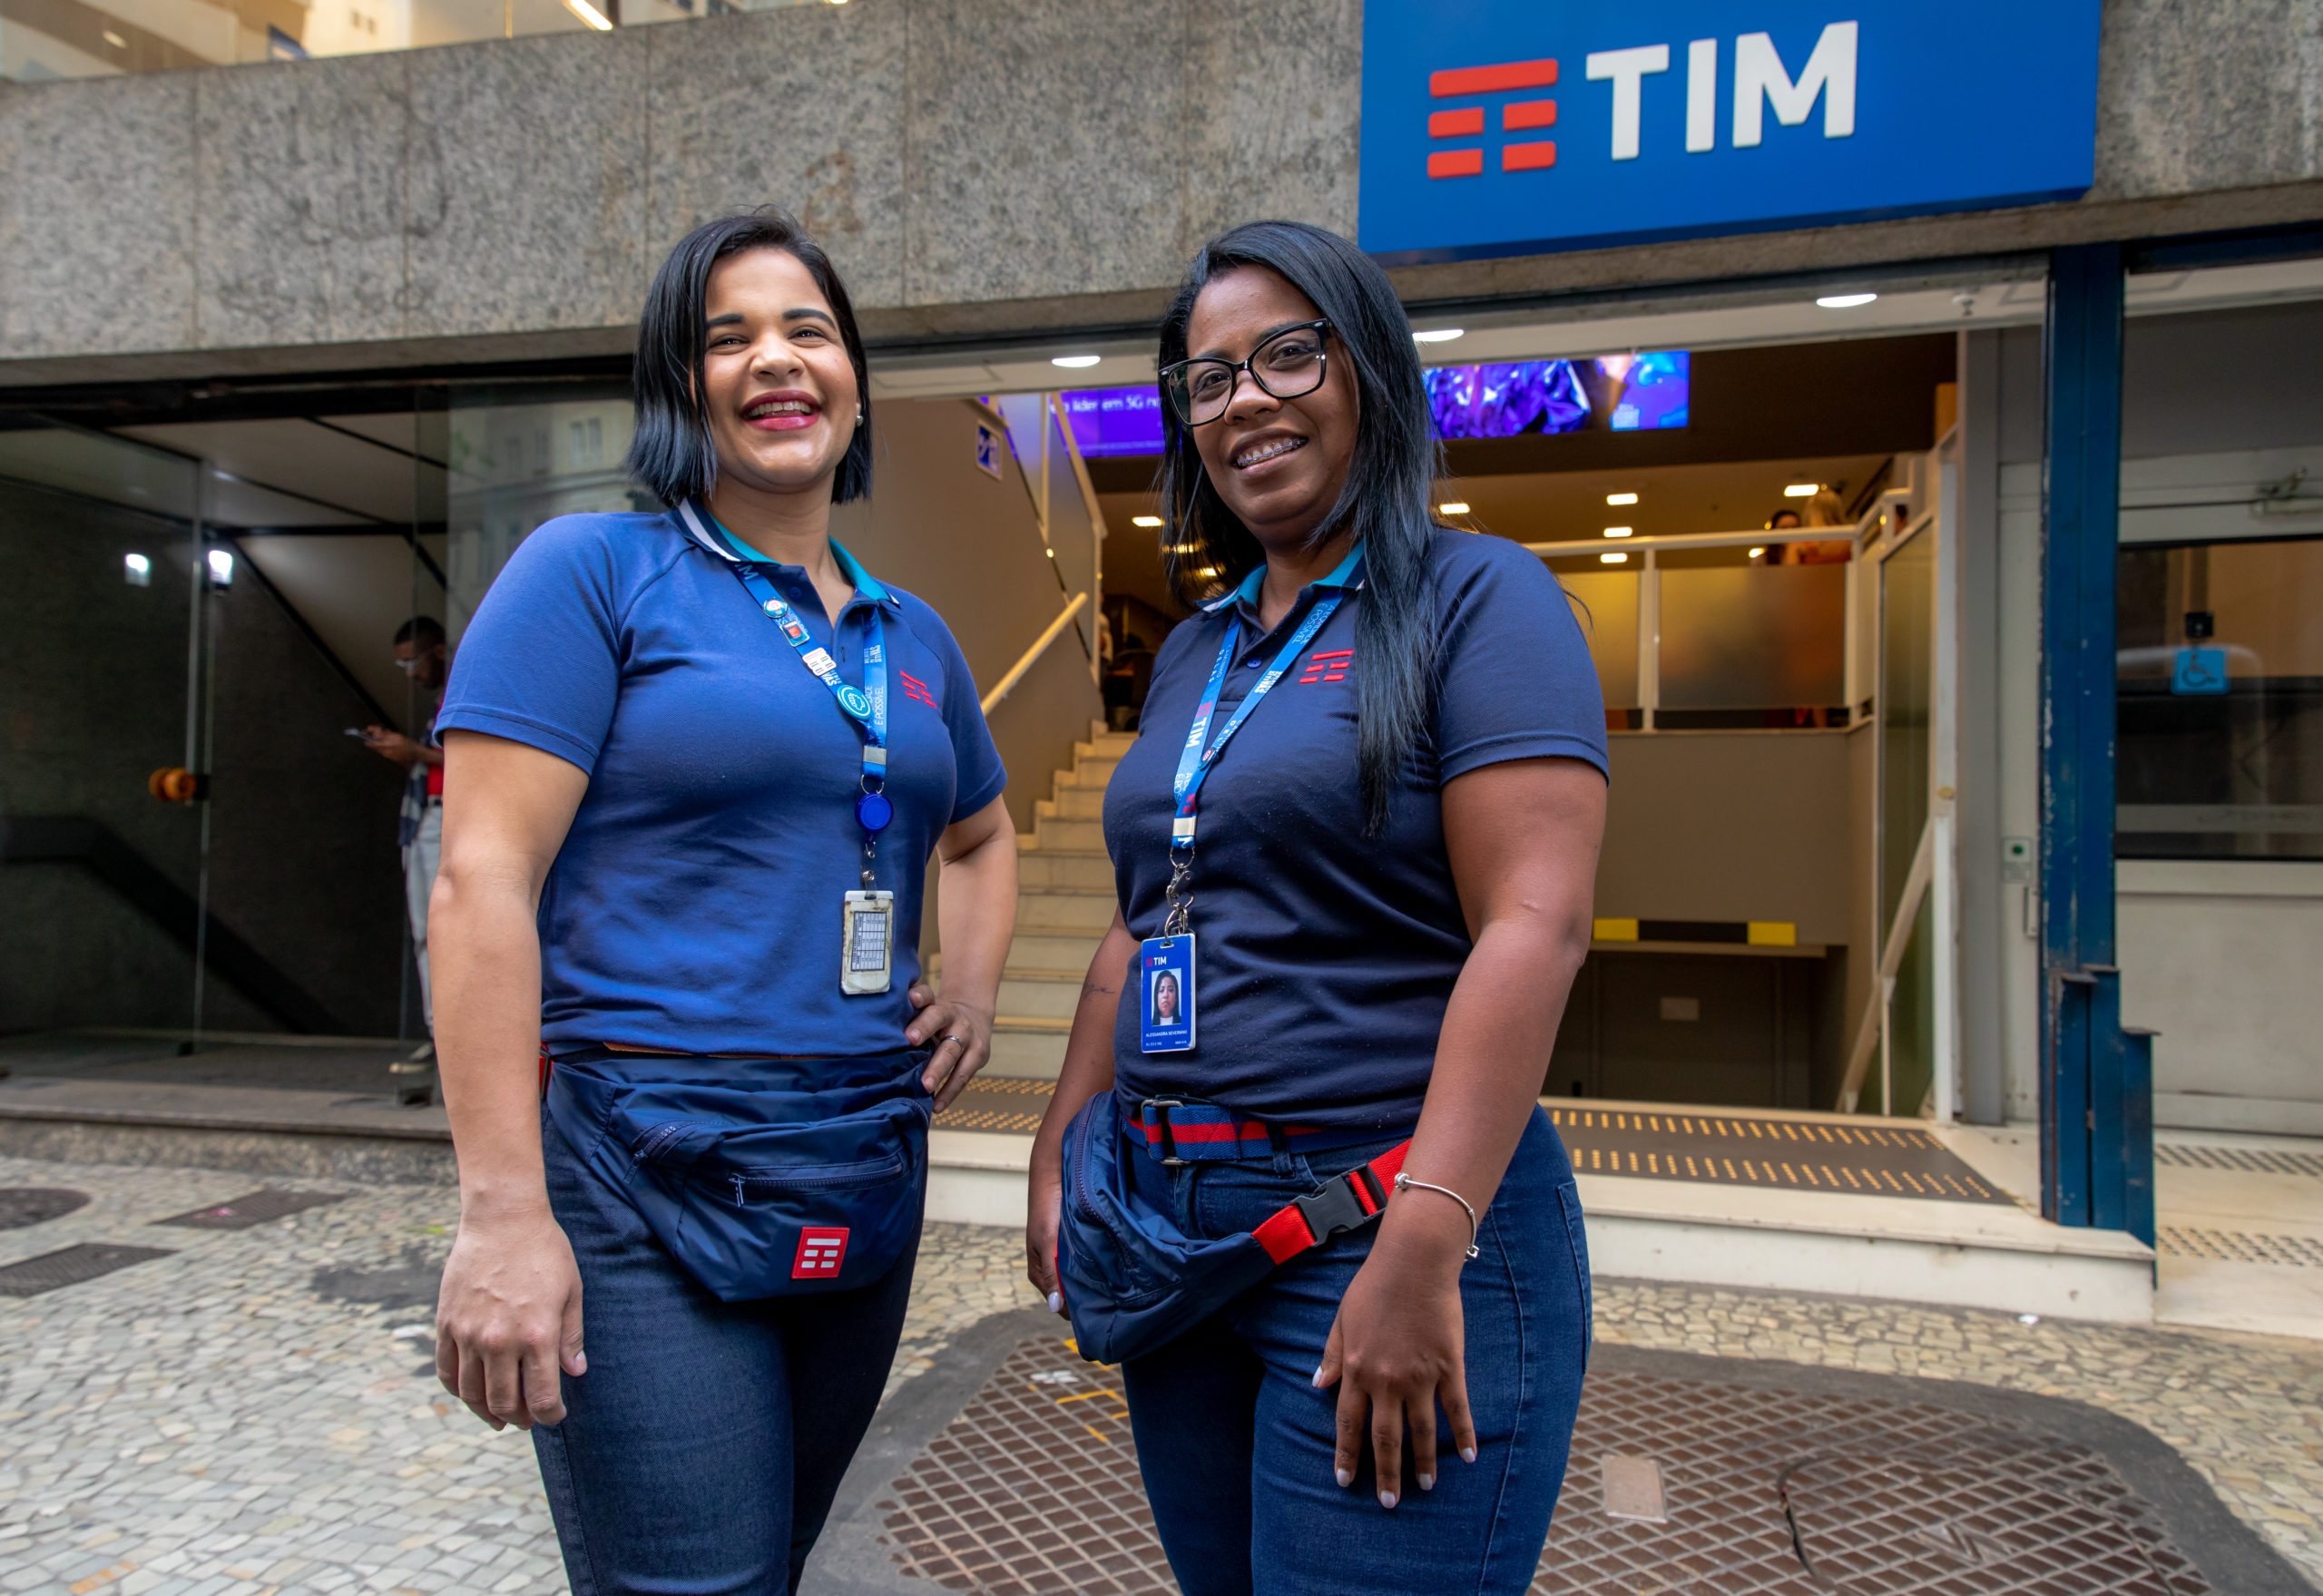 Lojas da TIM no Rio são pontos de conexão para mulheres em situação de risco (Foto: Divulgação)